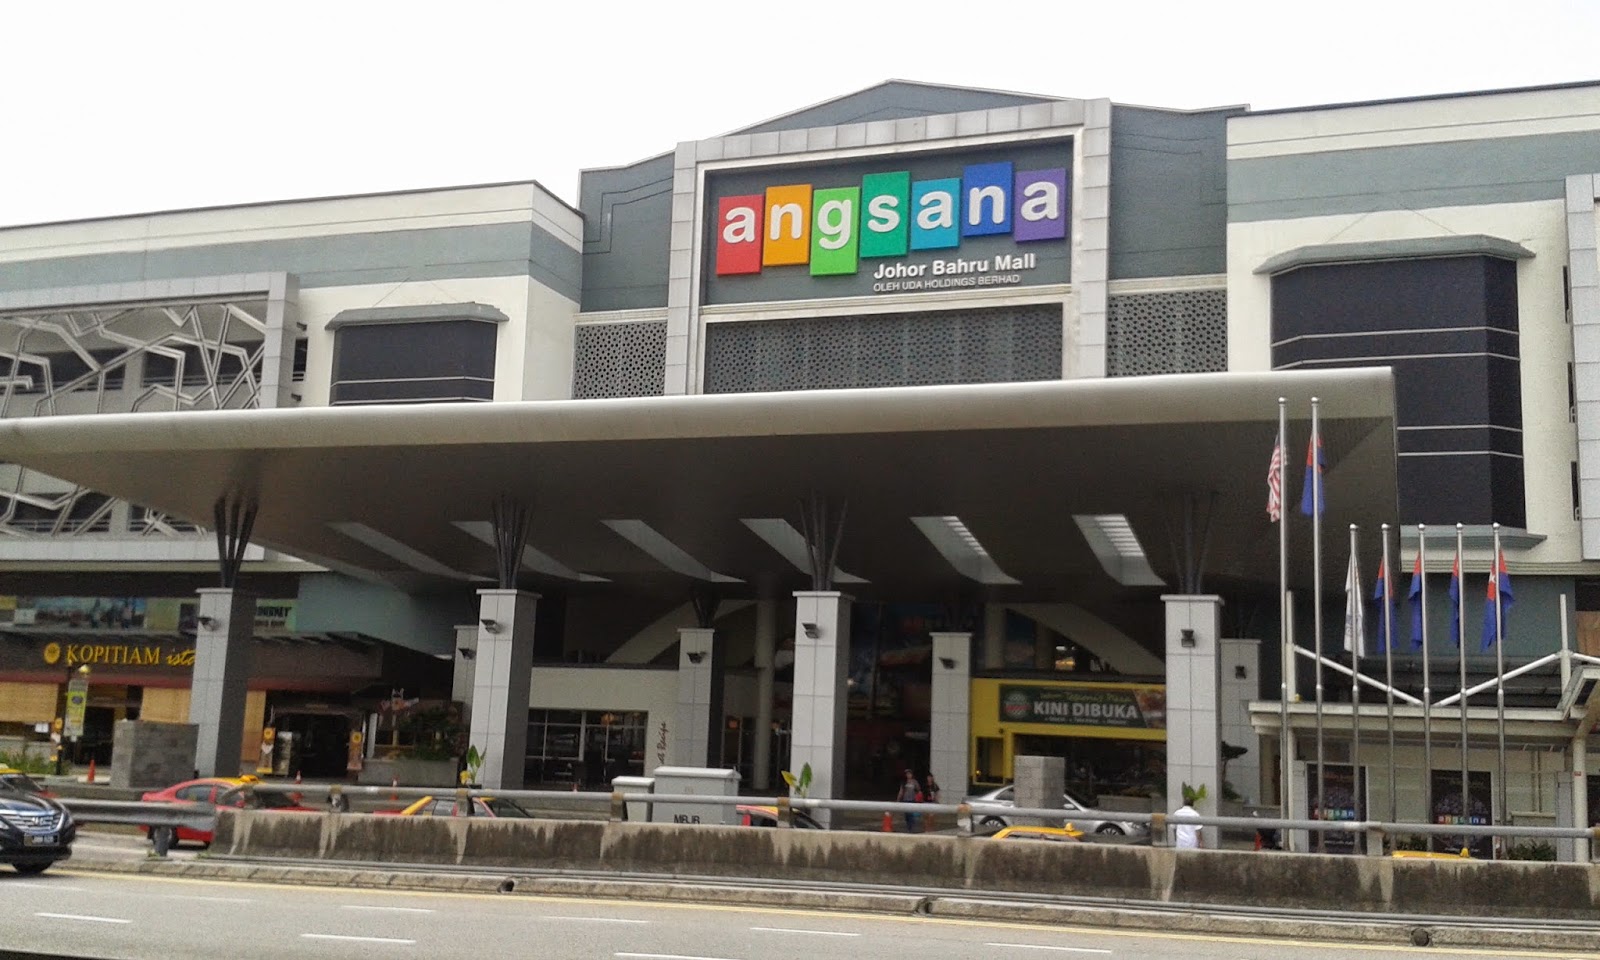 Angsana Johor bahru Mall